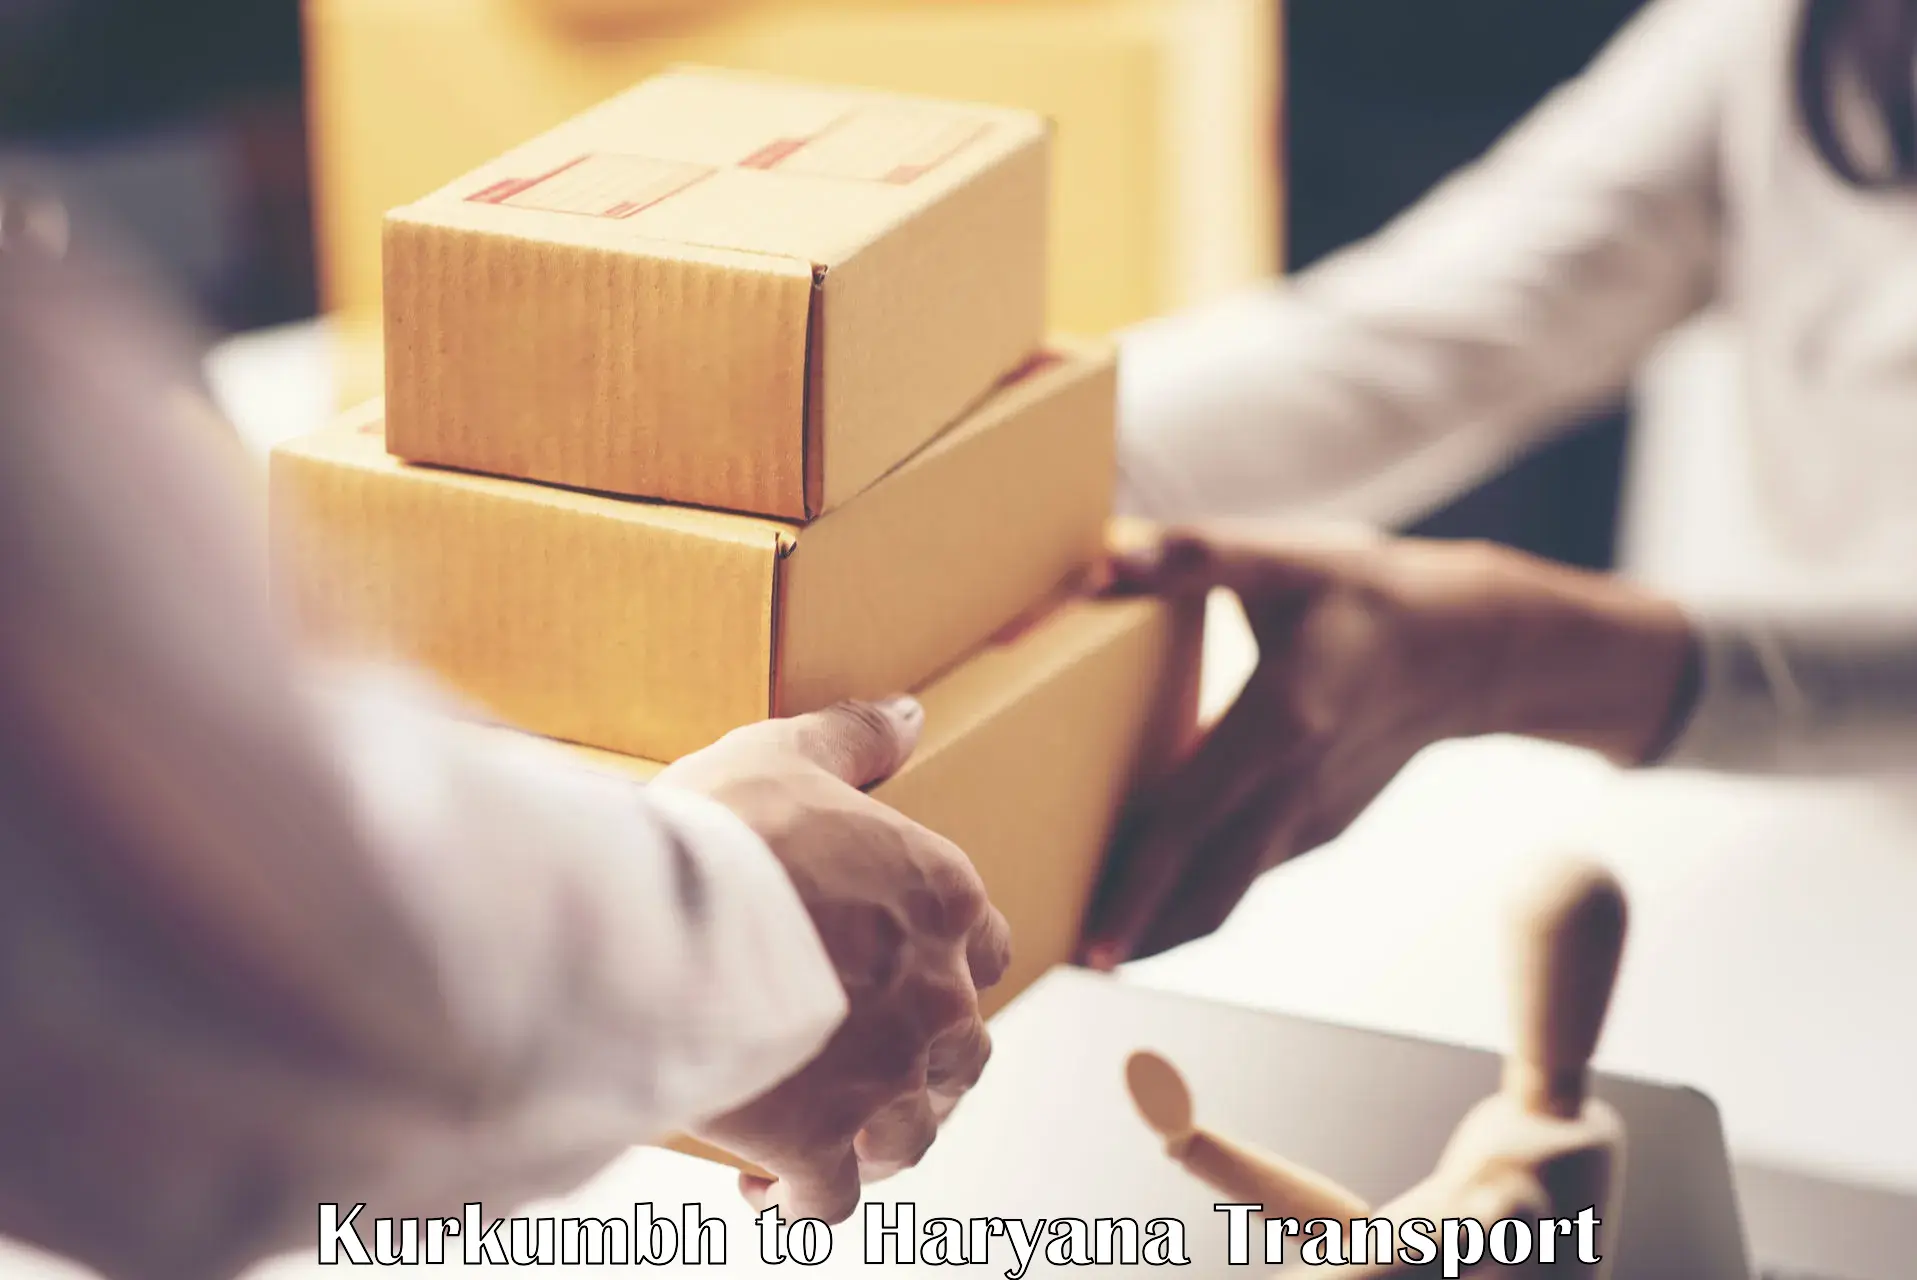 Shipping services Kurkumbh to Haryana